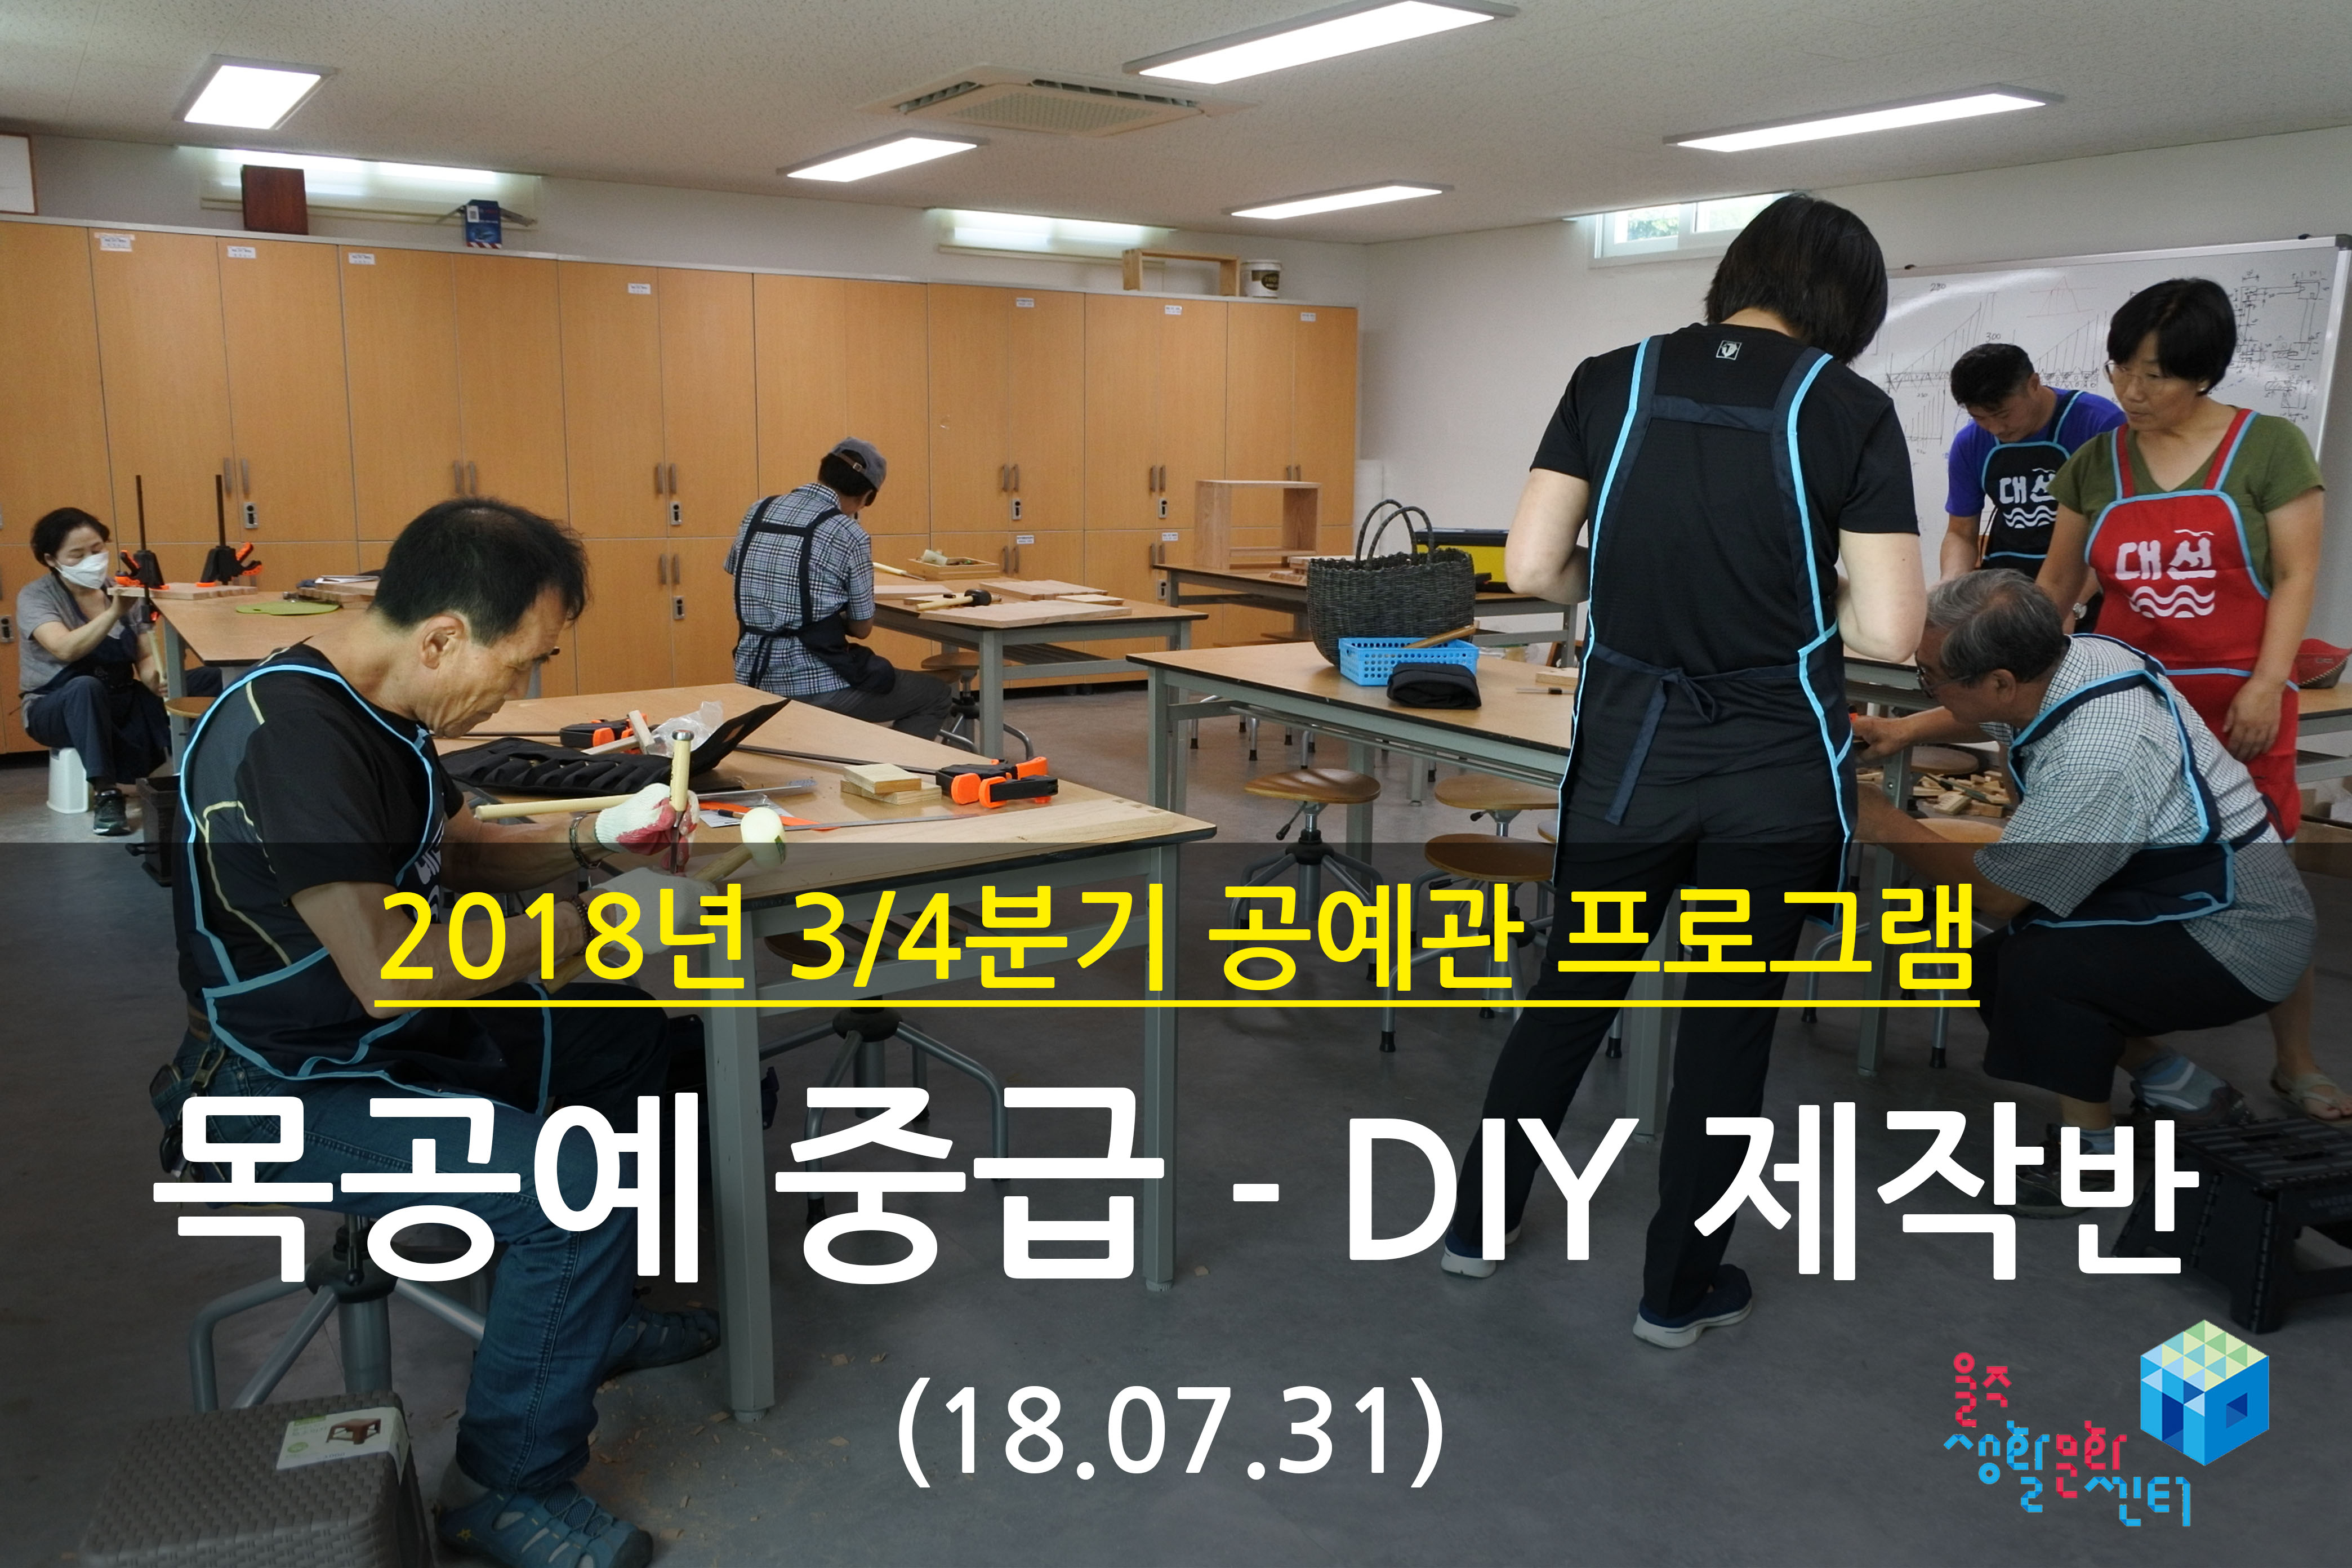 2018.07.31 _ 목공예 중급 - DIY 제작반 _ 3/4분기 5주차 수업